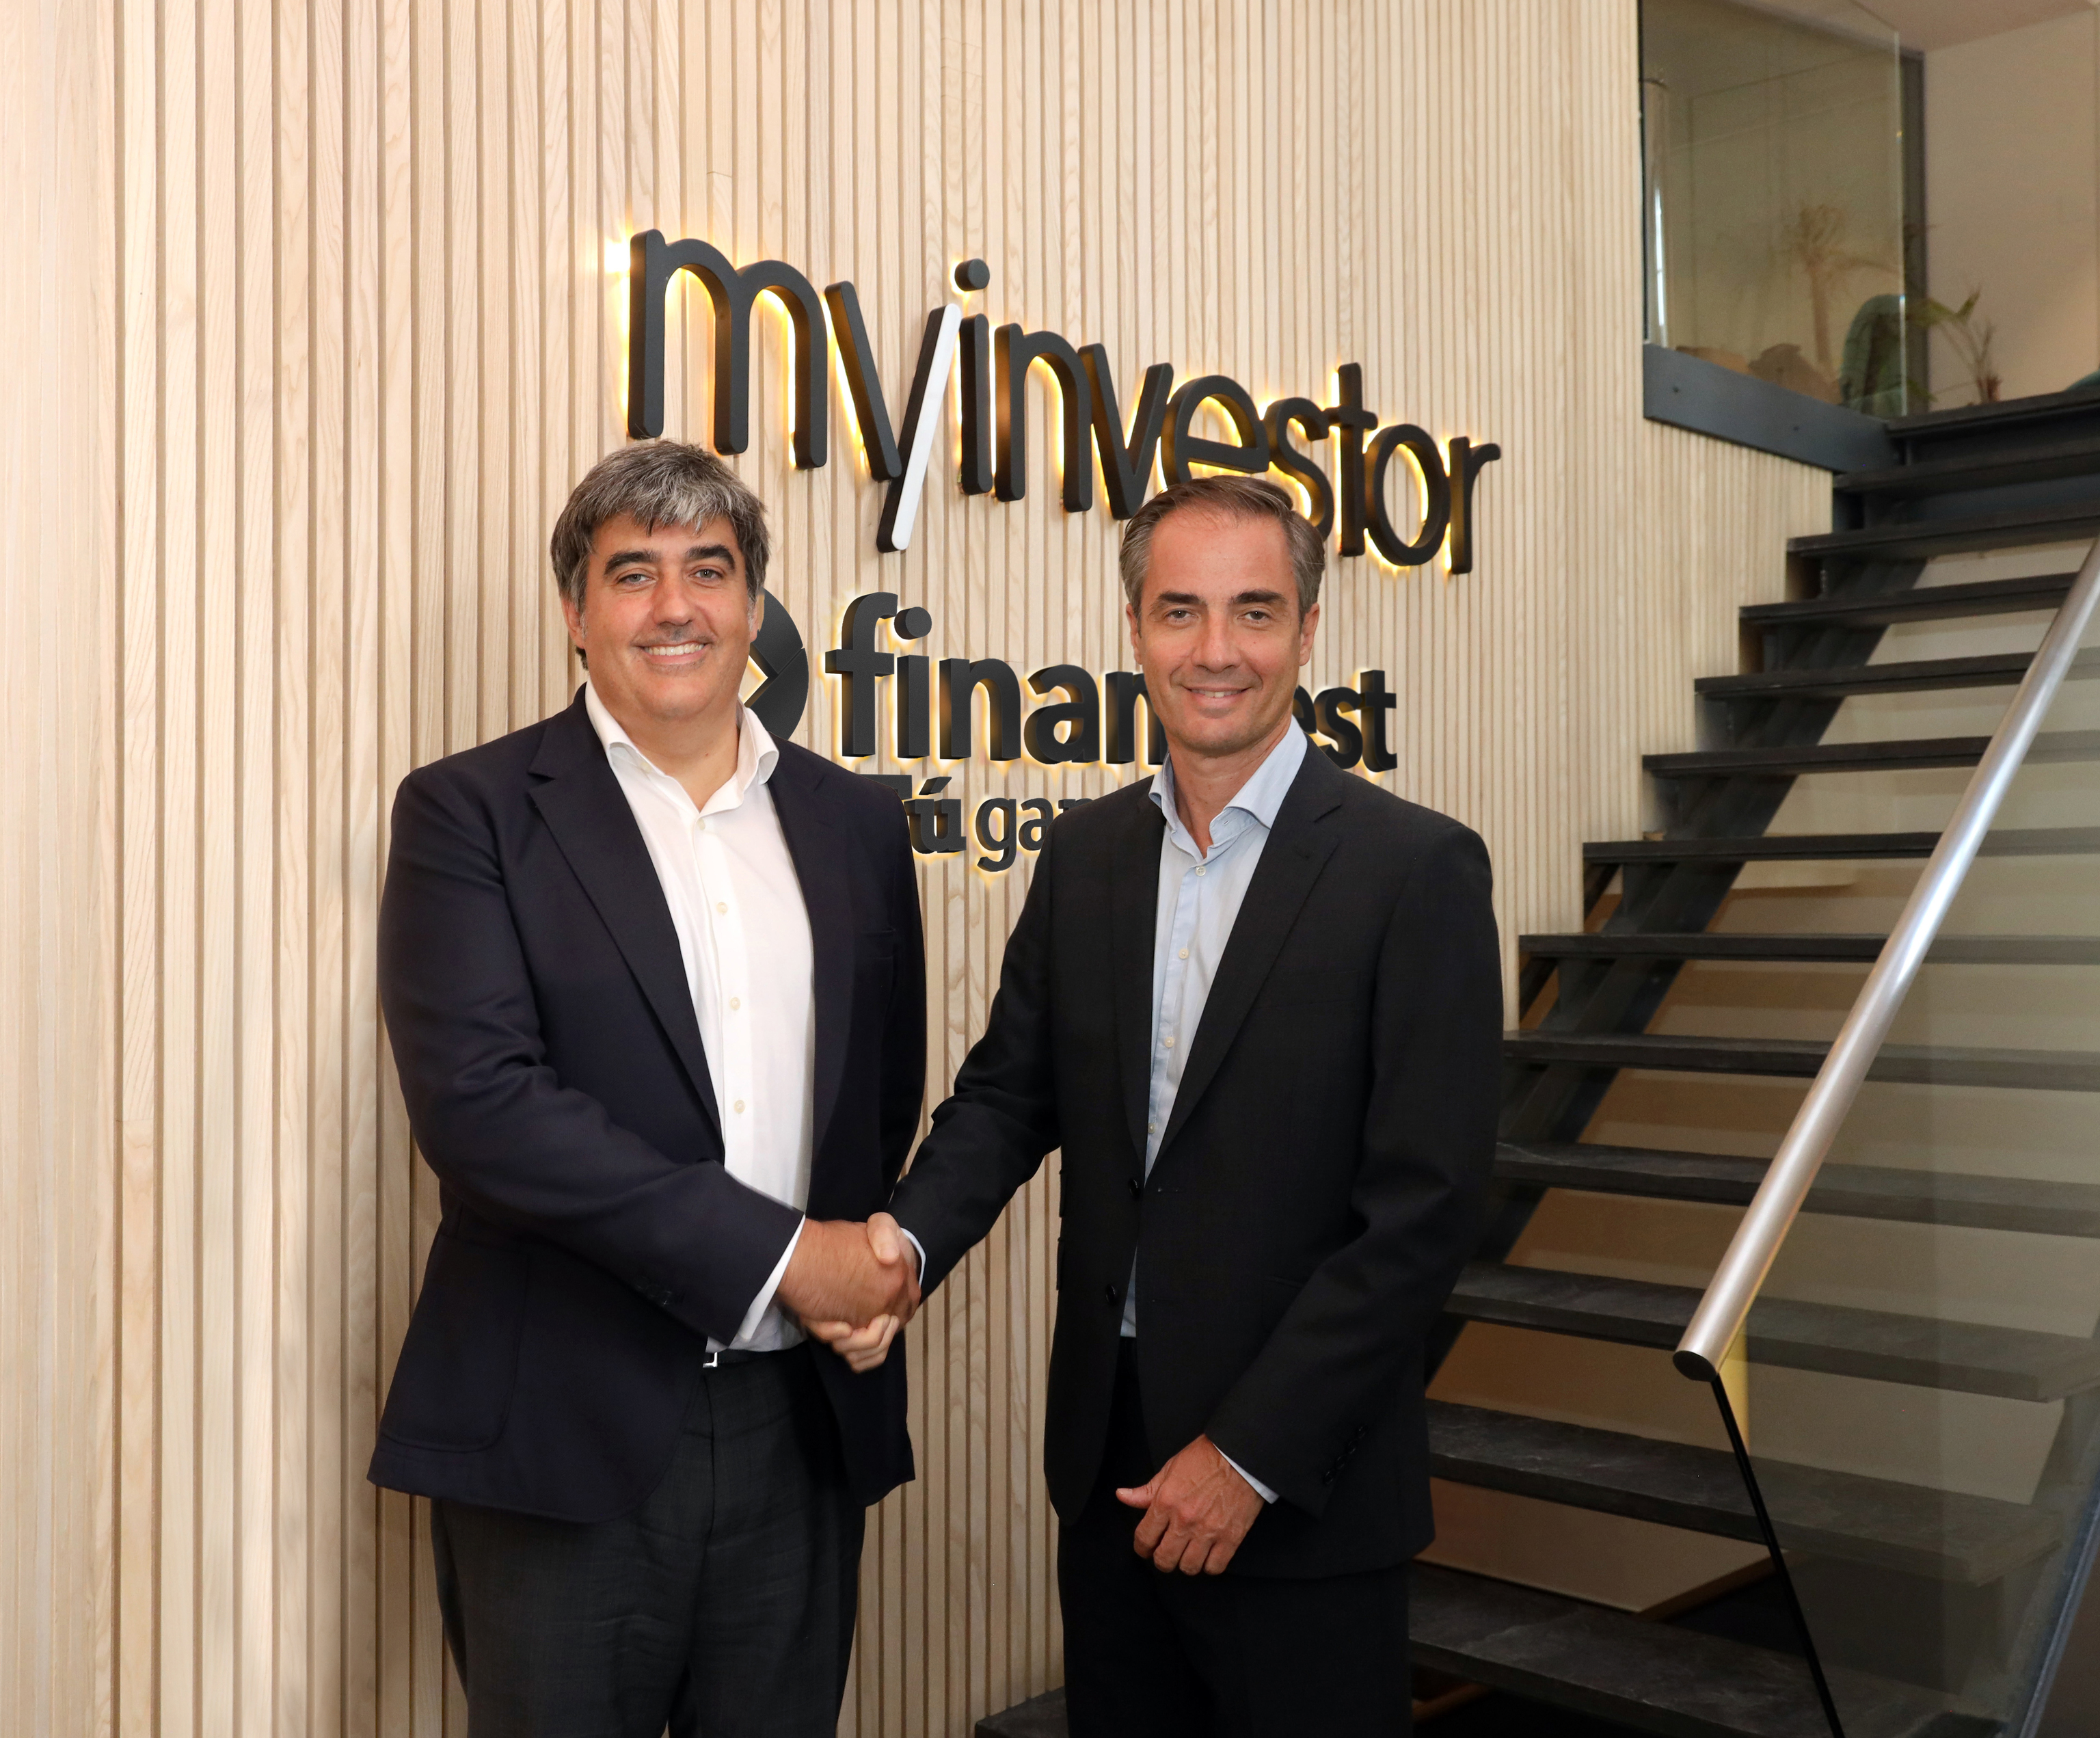 Carlos Aso, CEO de Andbank y vicepresidente de MyInvestor, y Asier Uribeechebarria.